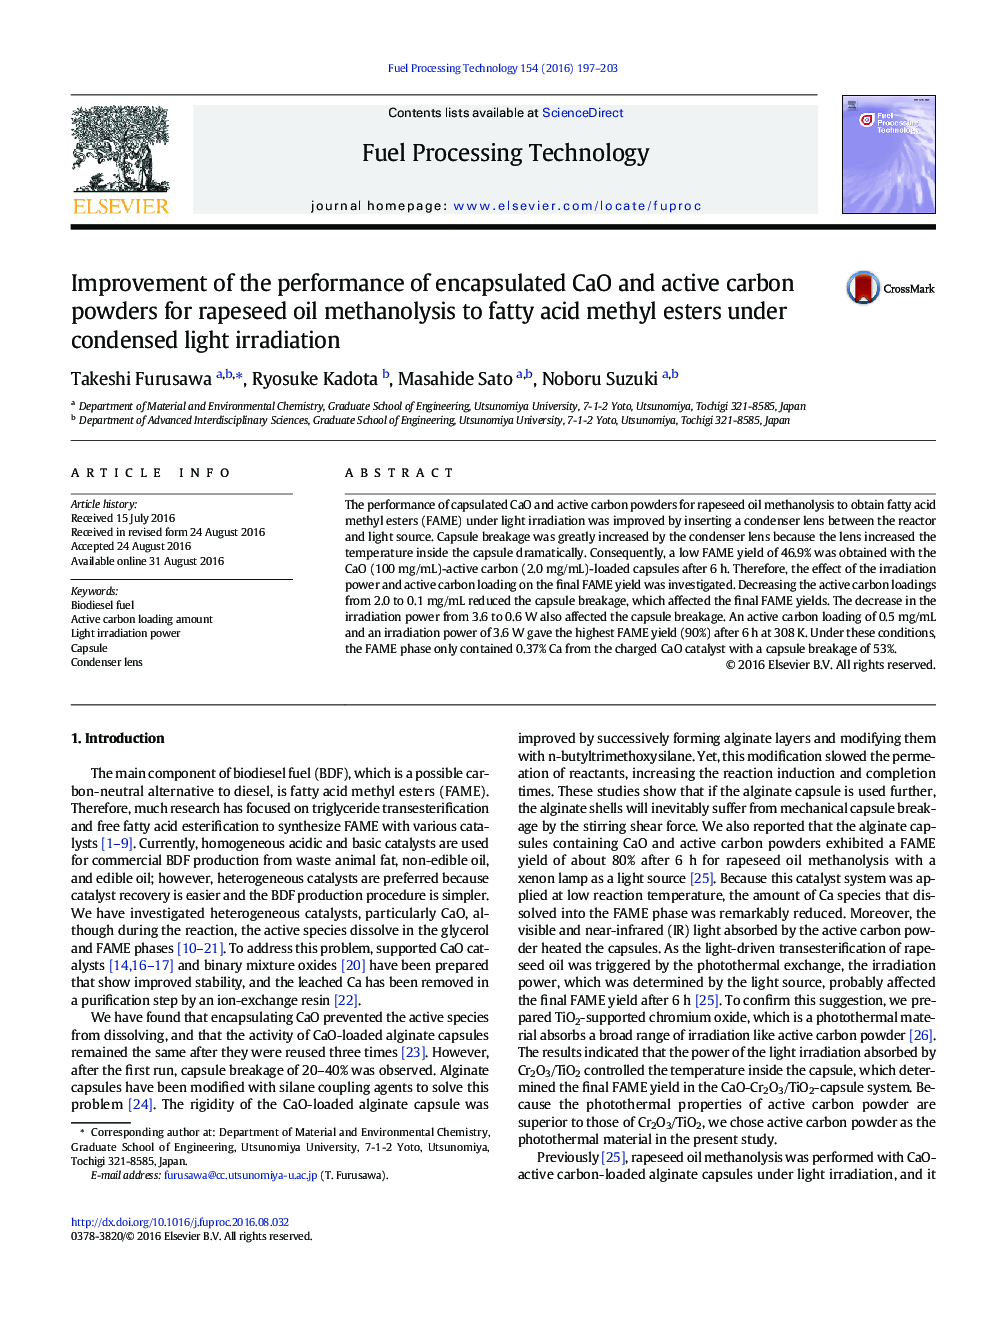 بهبود عملکرد پودر کربن و کربن فعال برای متانولیز روغن کلزا به متیل استرهای اسید چرب تحت نور خمیده 